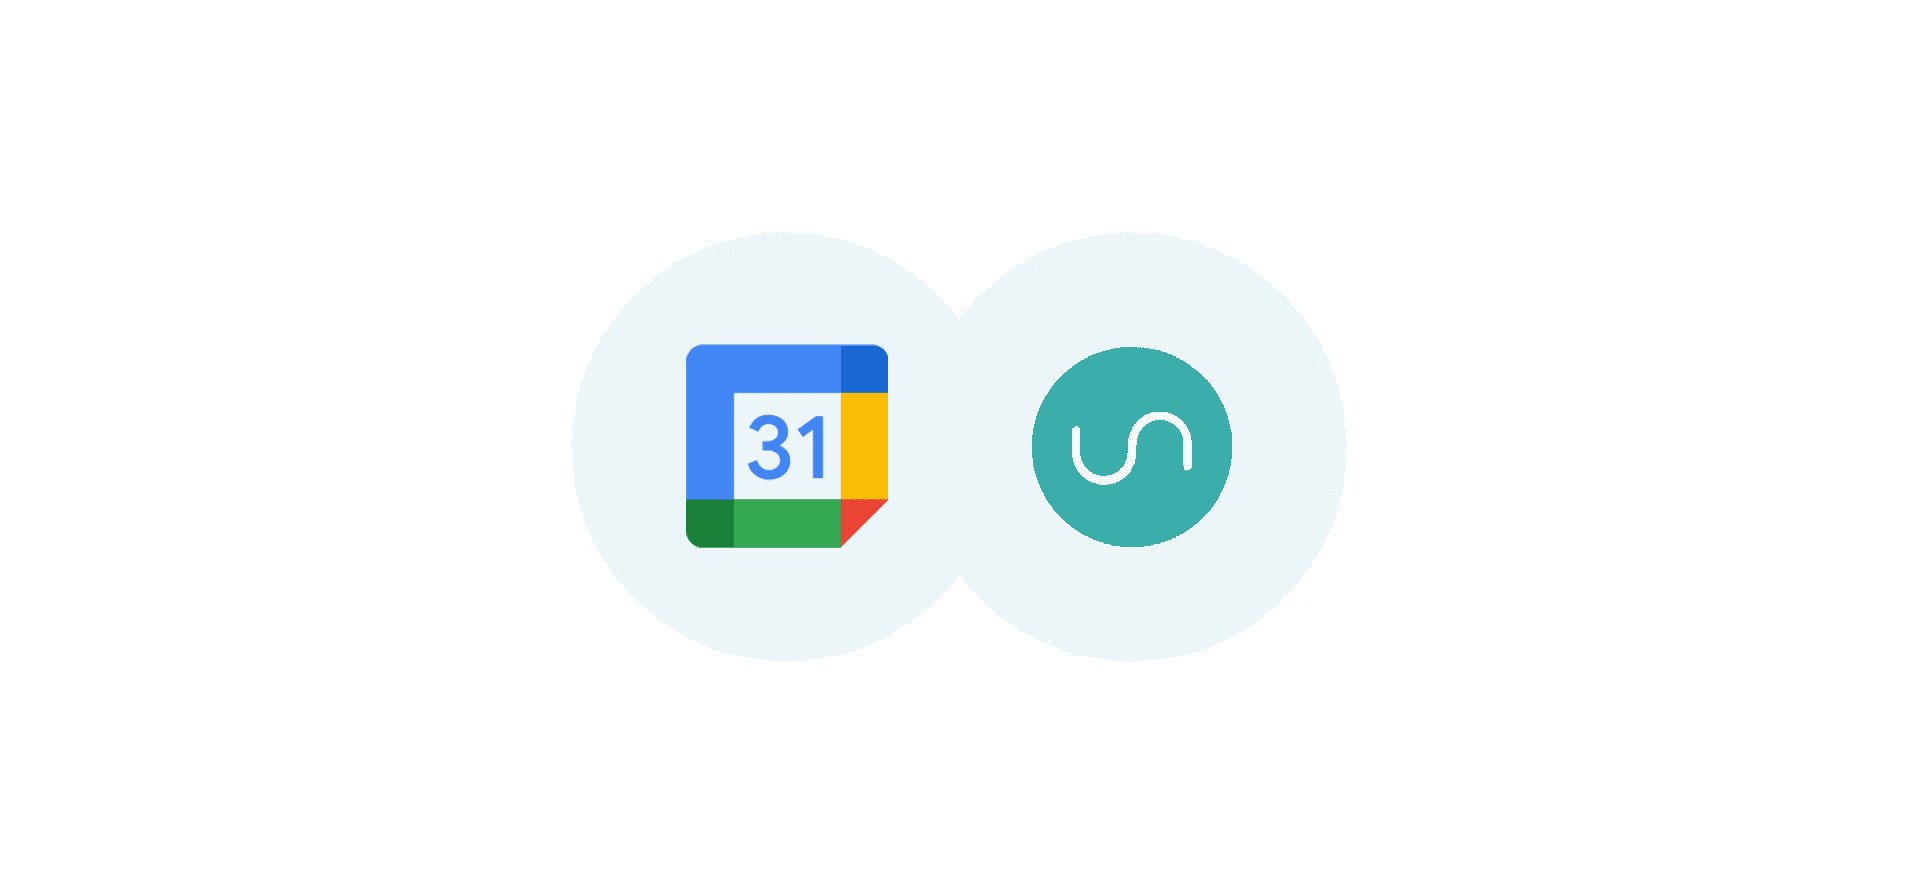 Logos for Google Calendar and Unito, representing Unito's latest integration.